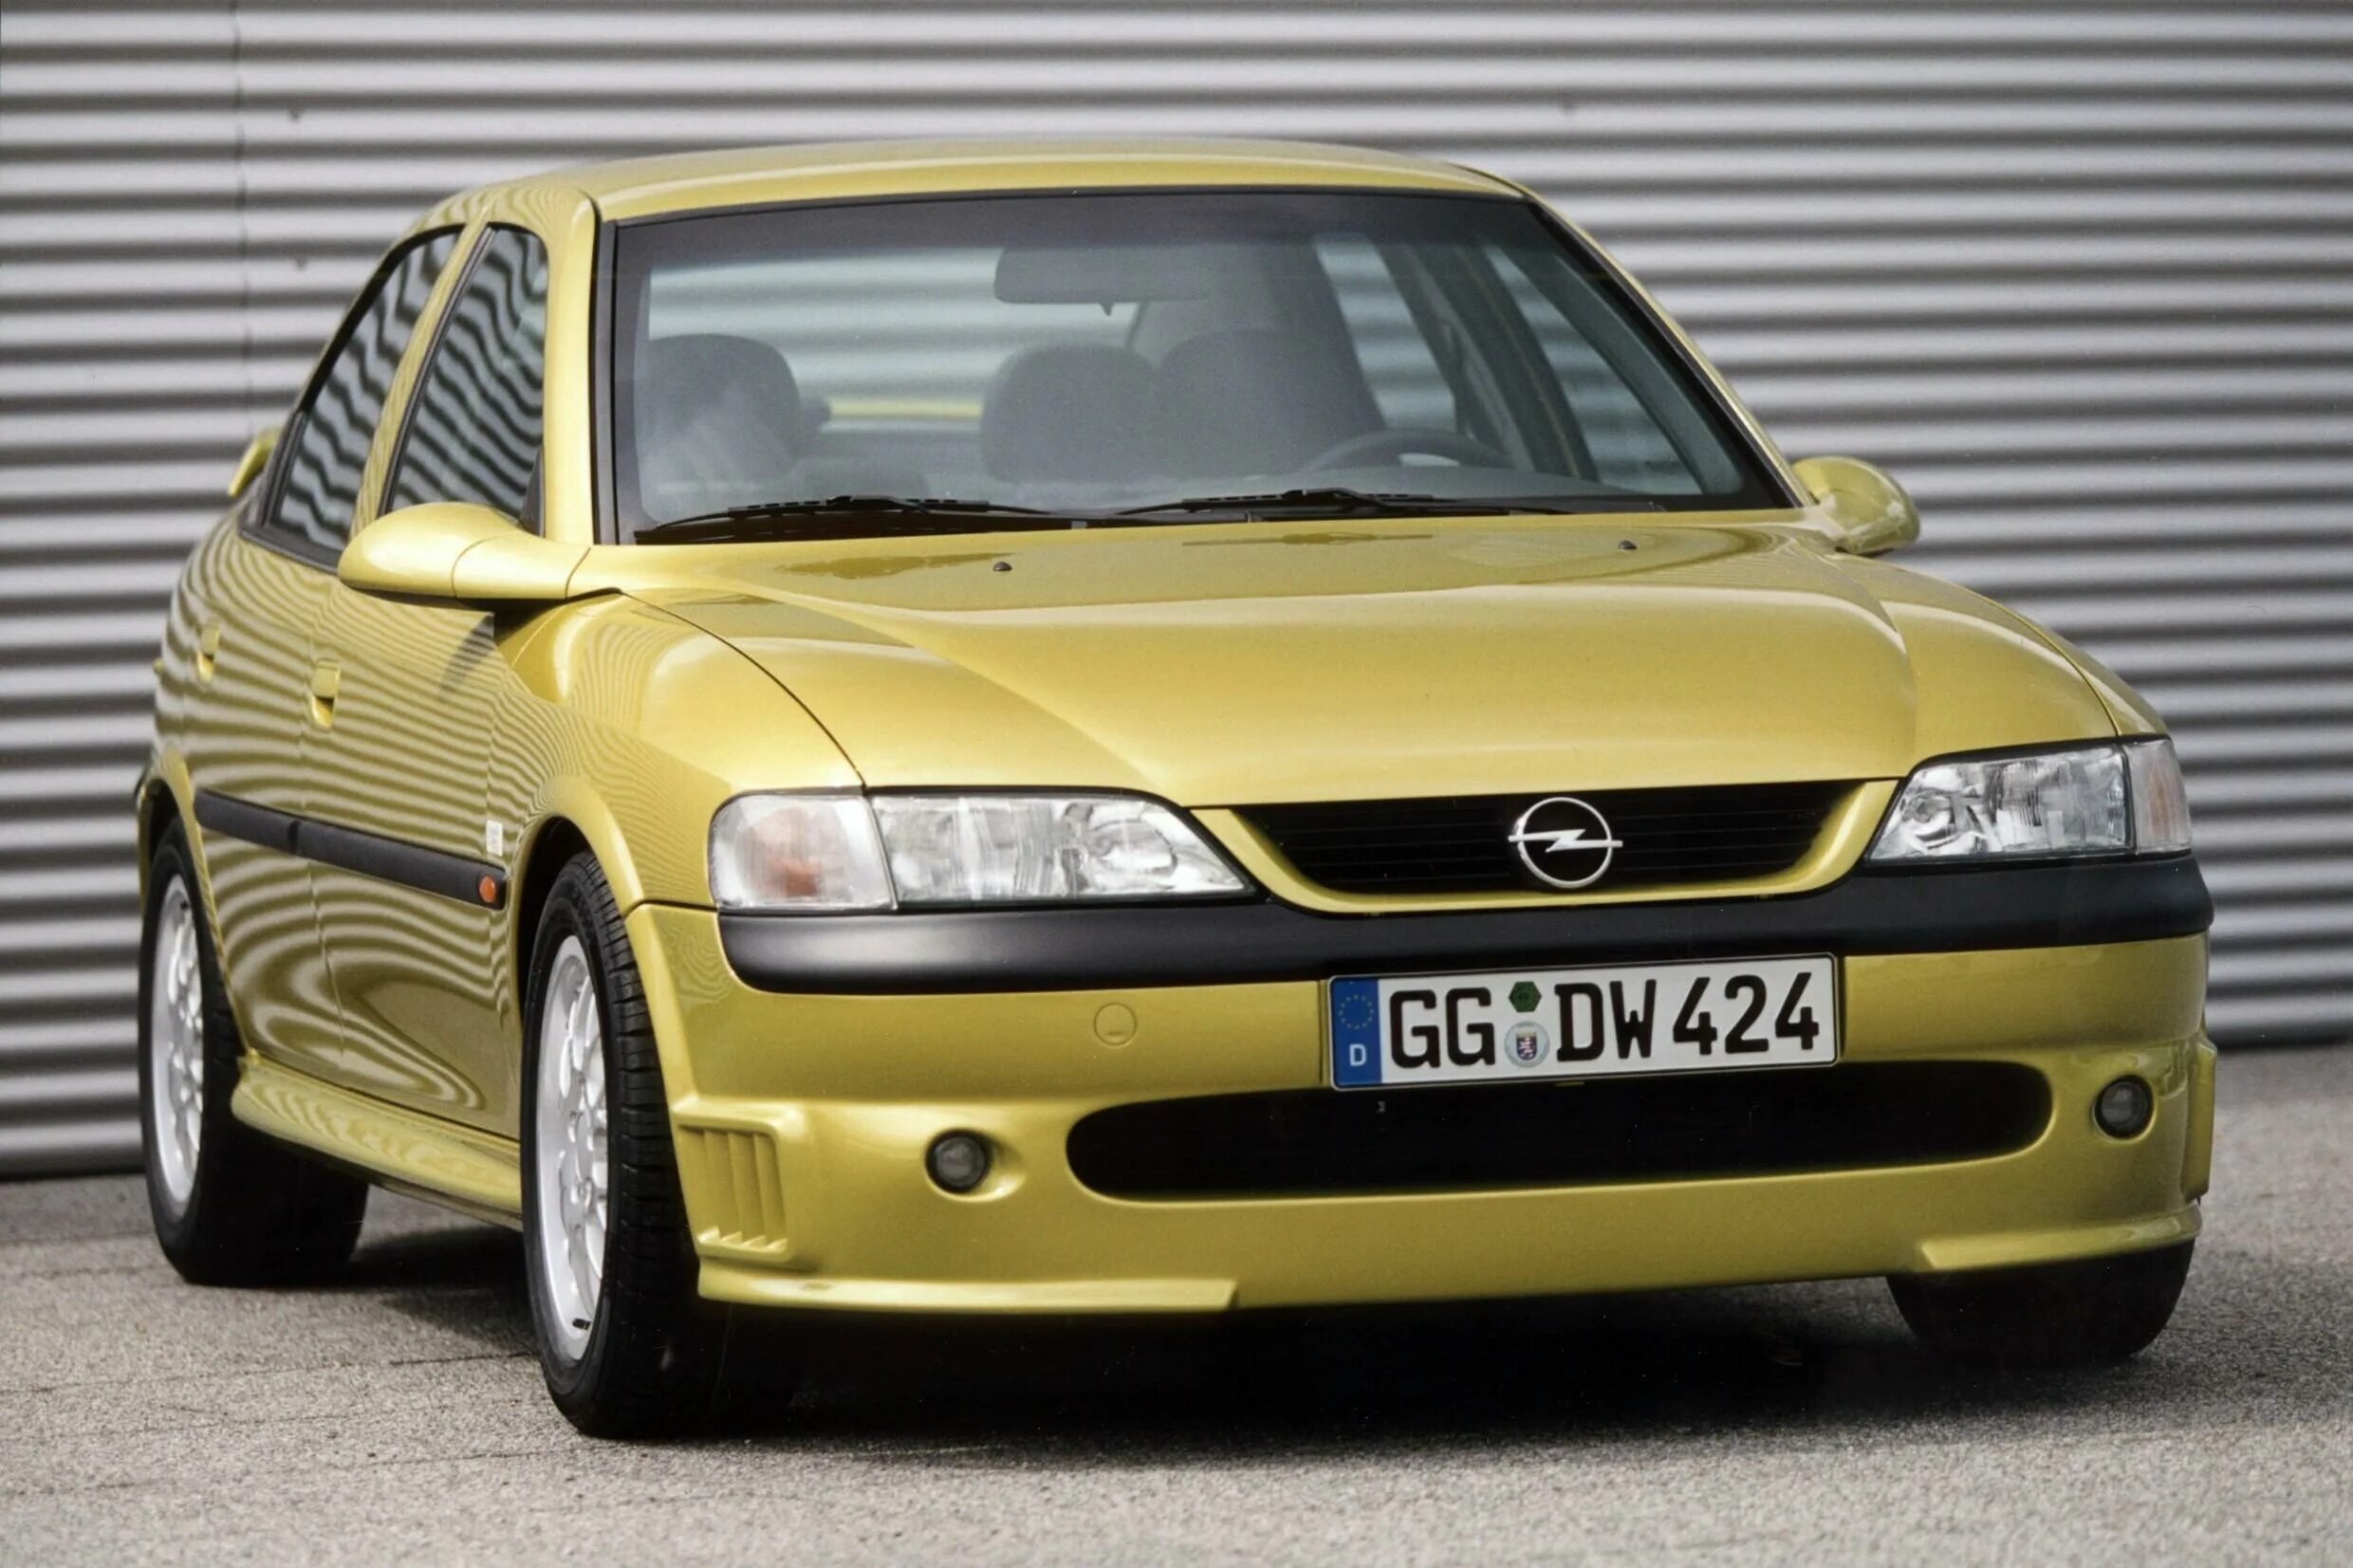 Opel Vectra b 1.6. Опель Вектра б i500. Opel Vectra 1.8. Opel Vectra b 1997 1.6. Покажи опель вектра б